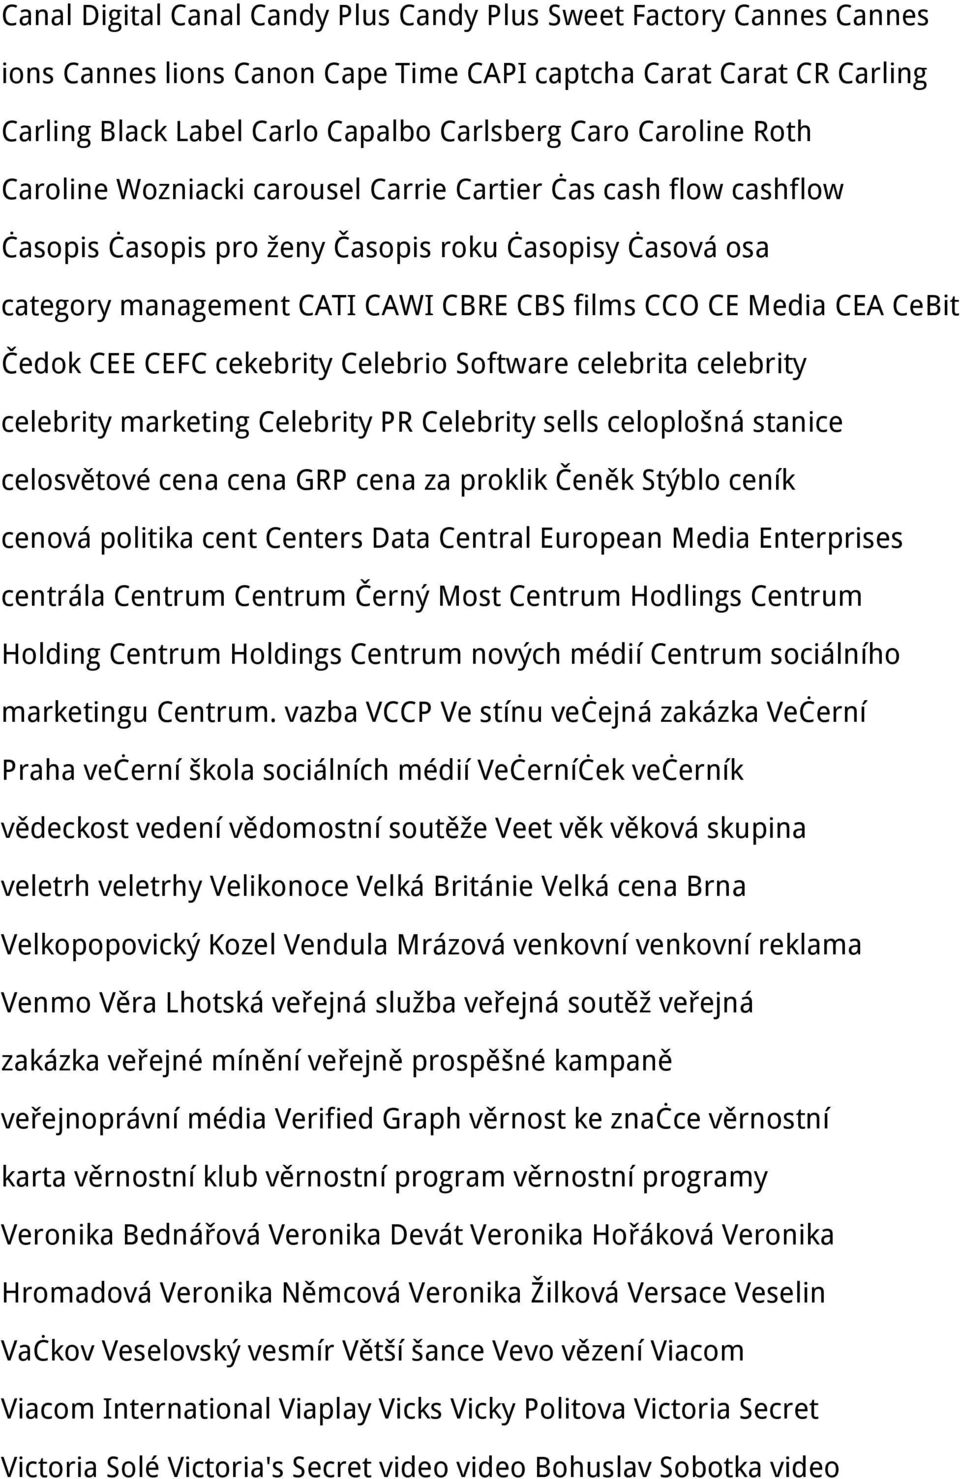 Čedok CEE CEFC cekebrity Celebrio Software celebrita celebrity celebrity marketing Celebrity PR Celebrity sells celoplošná stanice celosvětové cena cena GRP cena za proklik Čeněk Stýblo ceník cenová